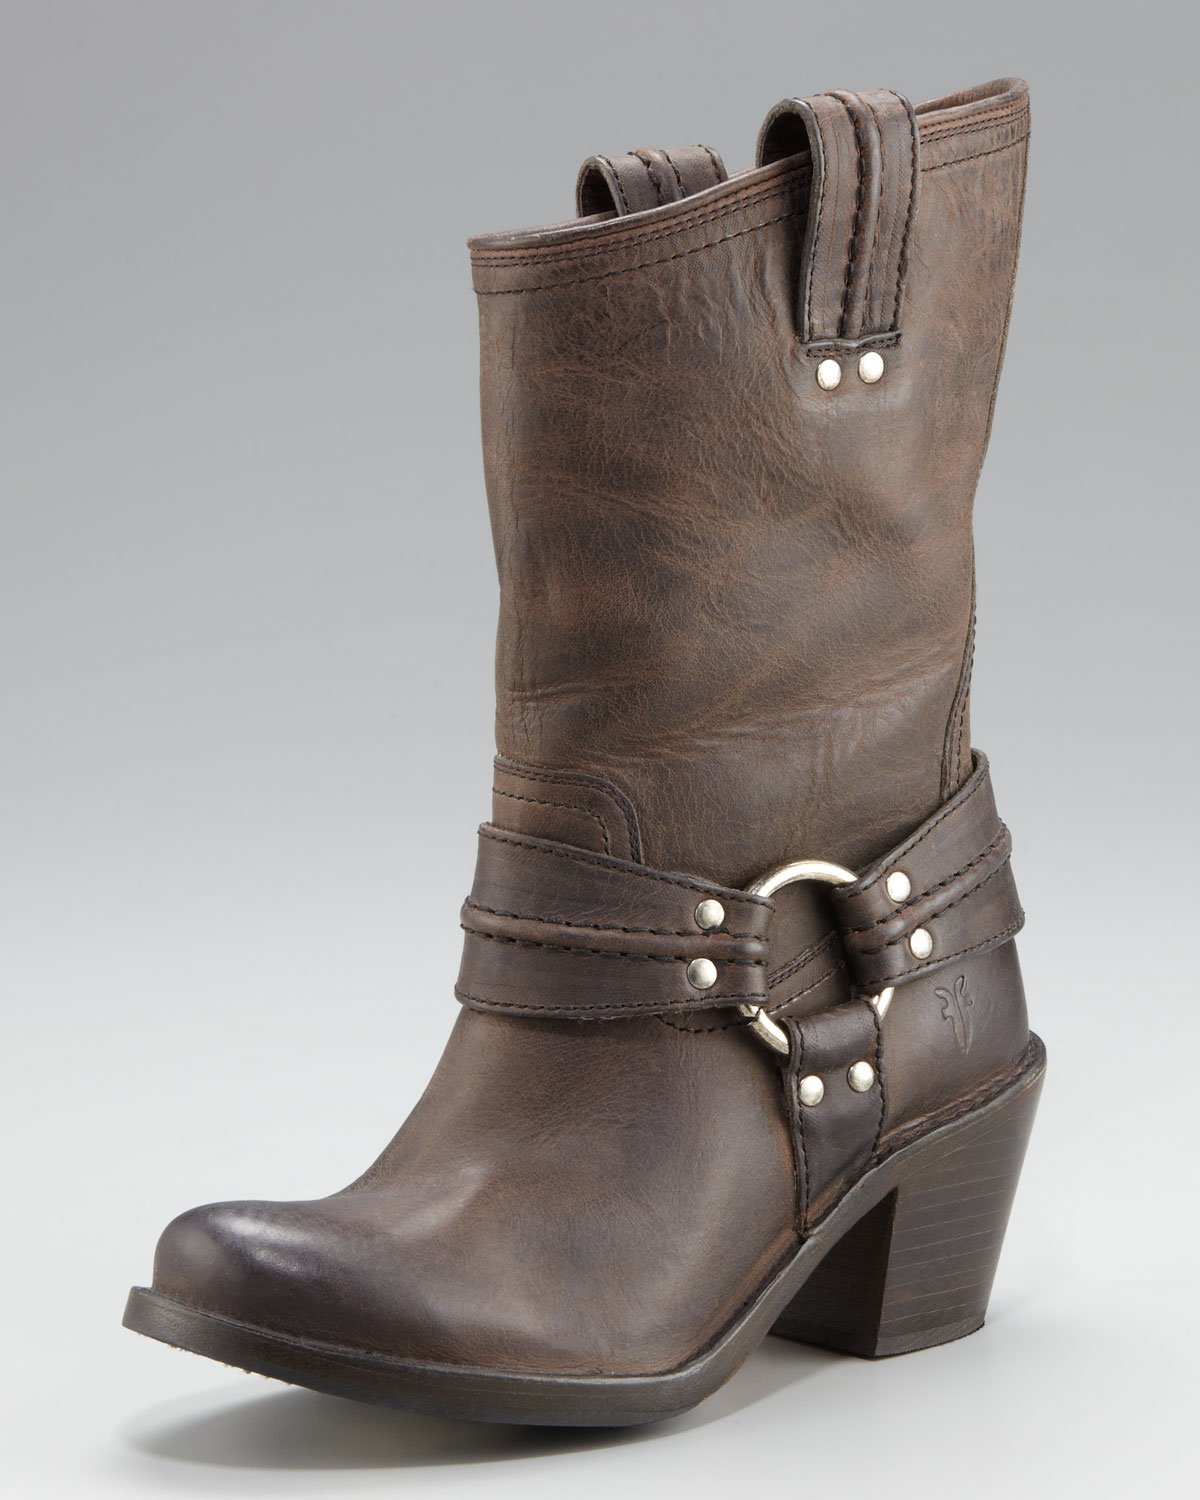 Lyst - Frye Carmen Harness Boot in Brown